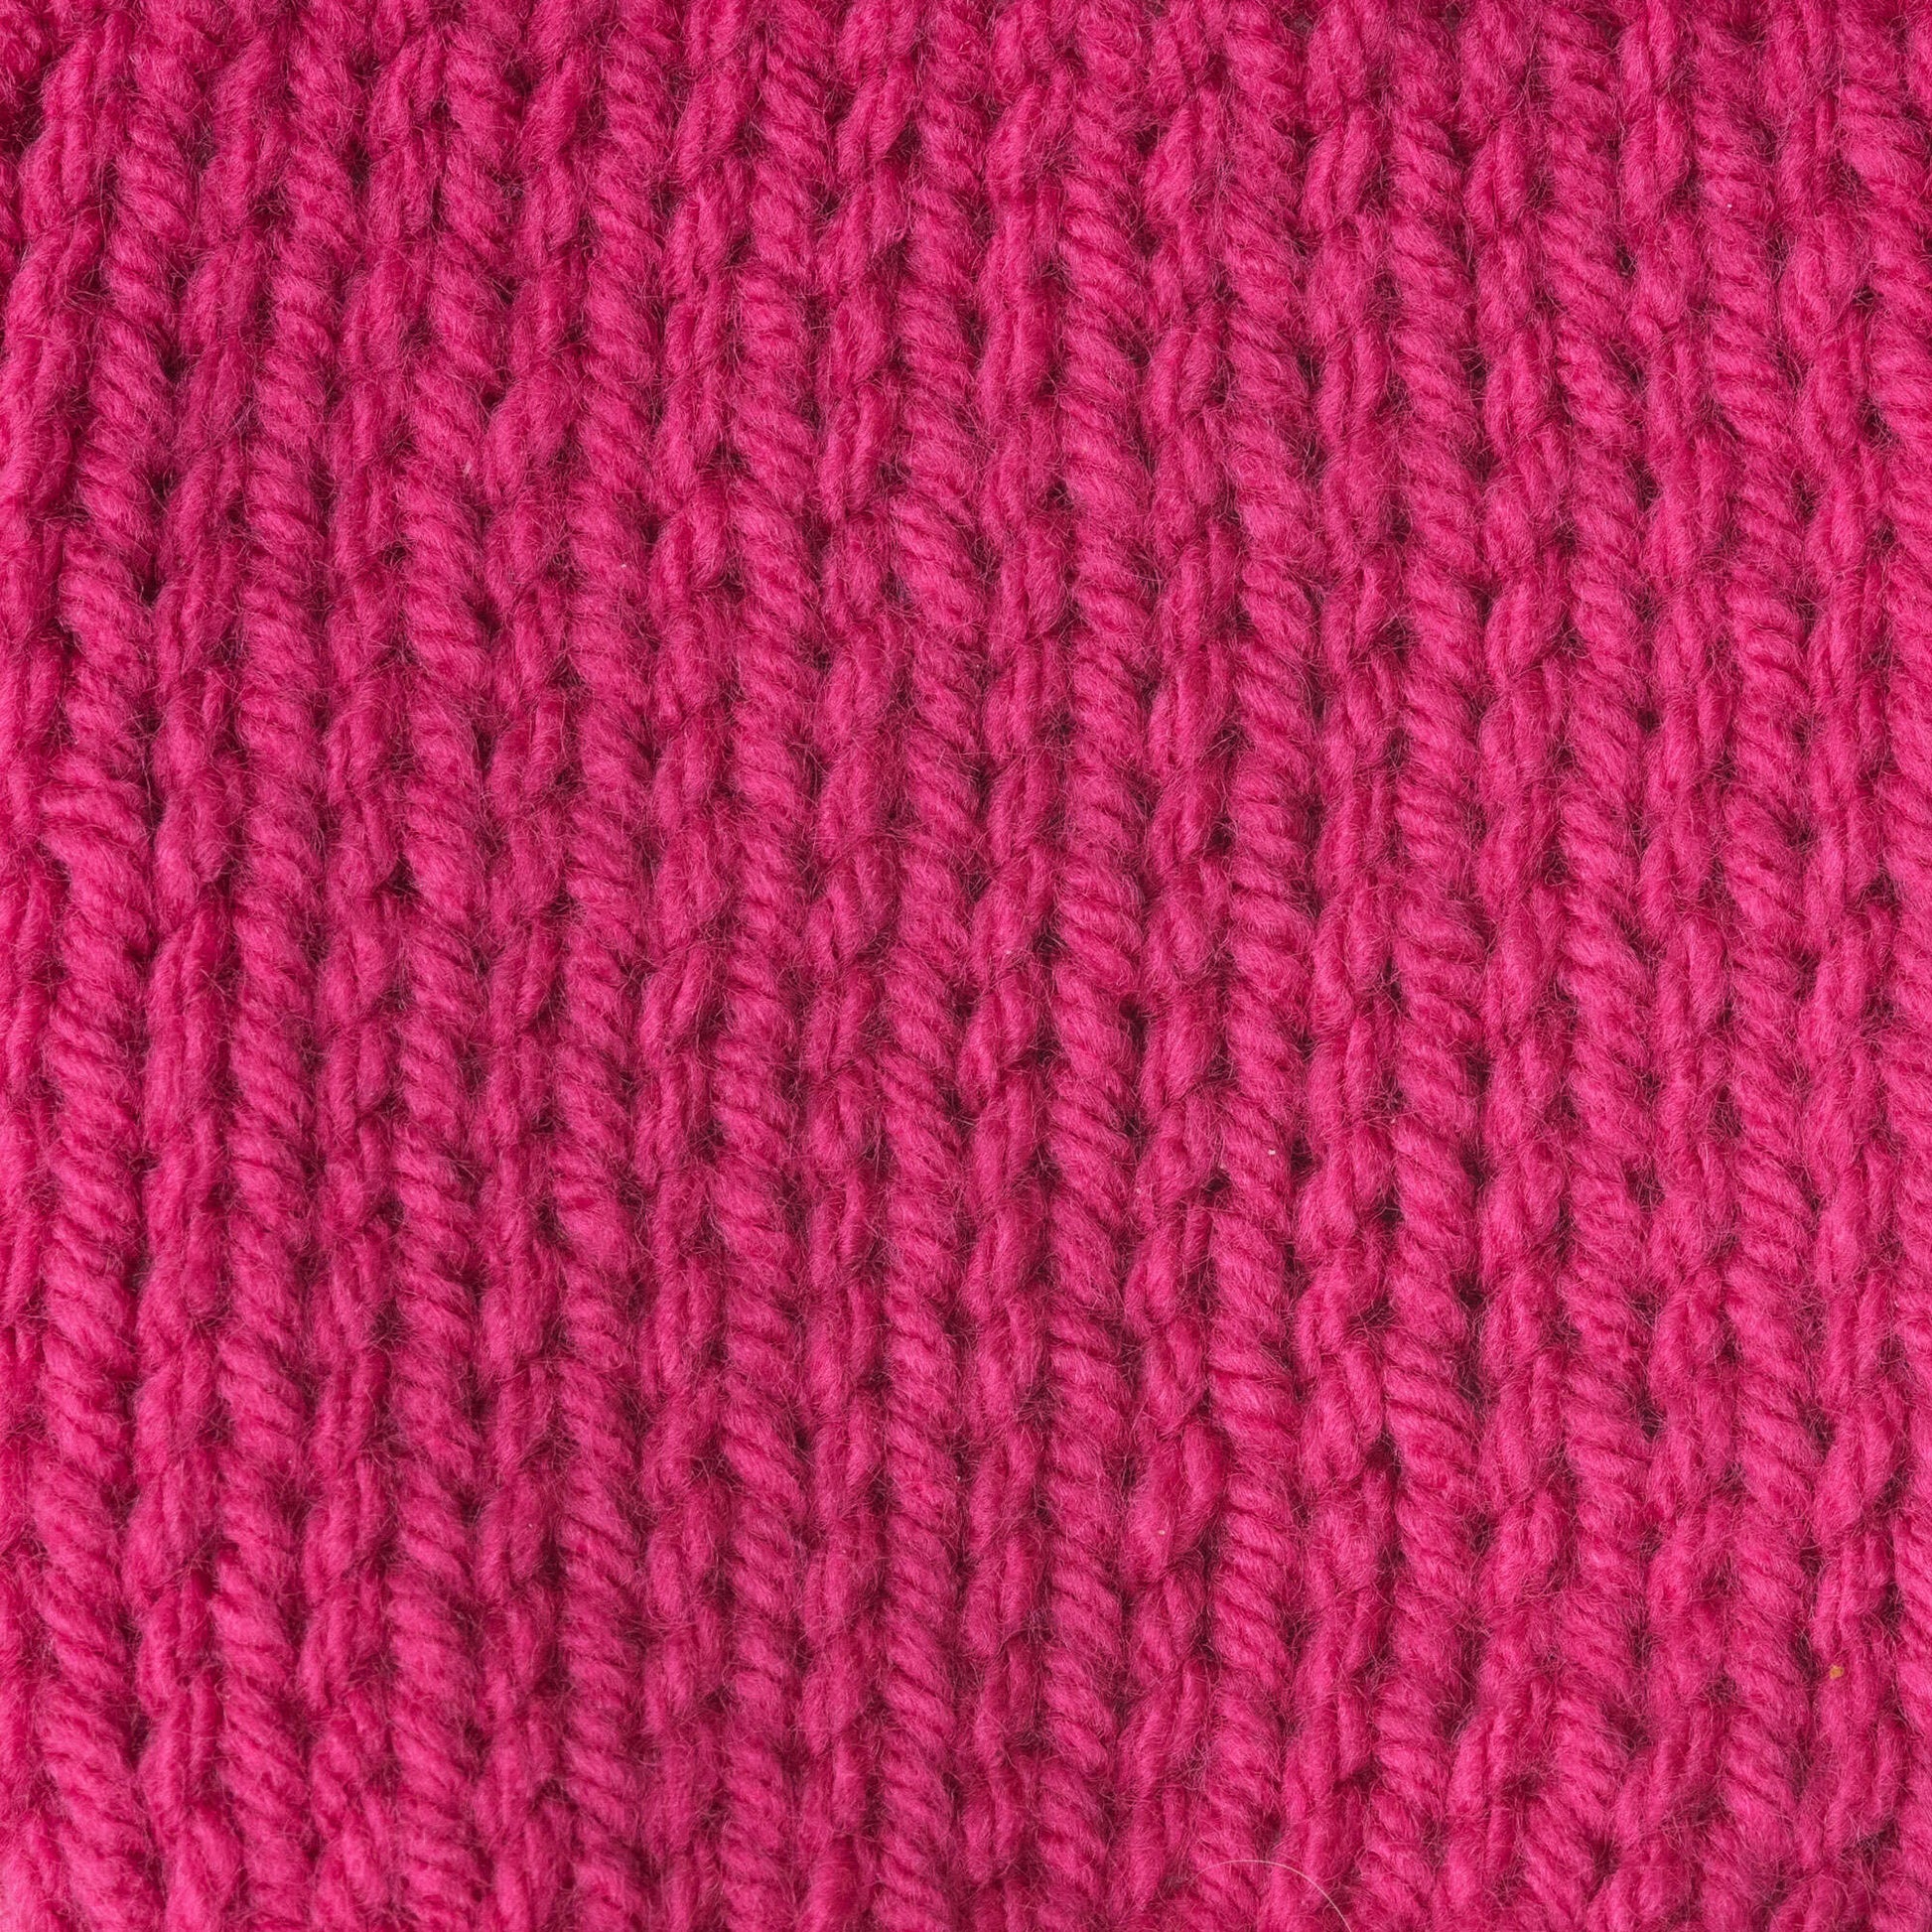 Caron One Pound Yarn Dark Pink